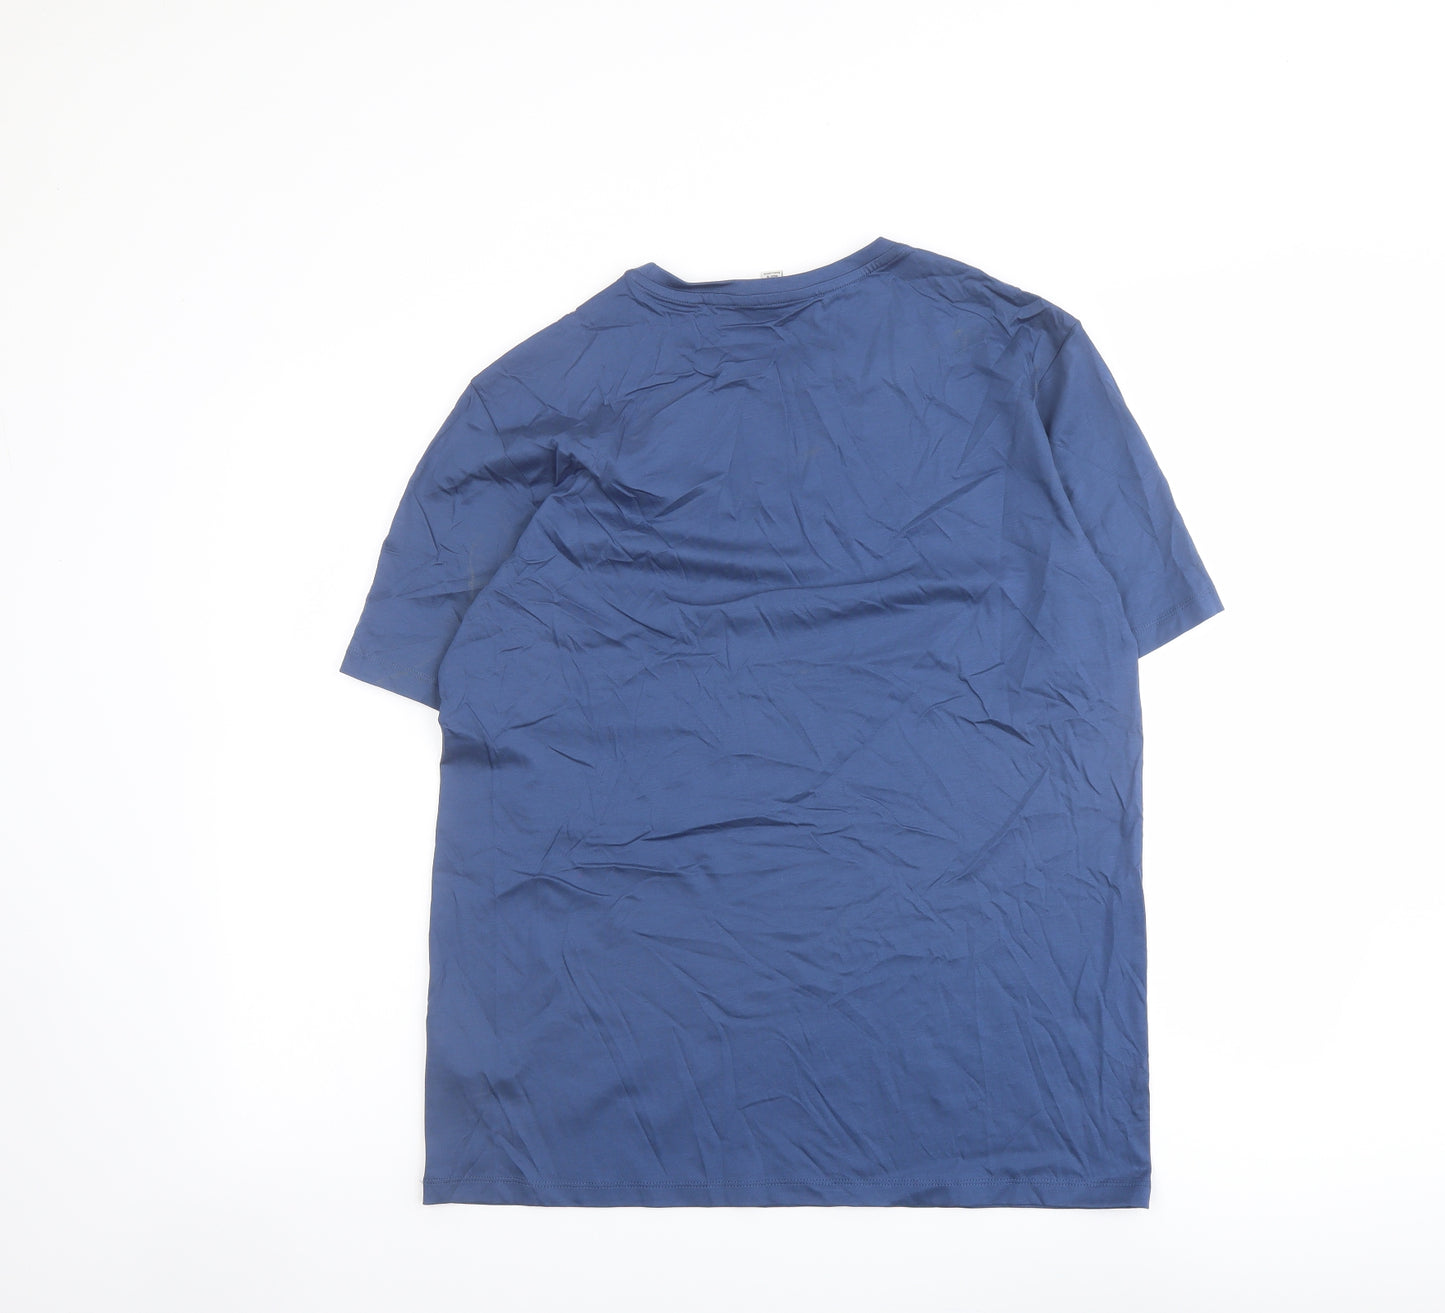 Autograph Mens Blue Cotton T-Shirt Size M Crew Neck